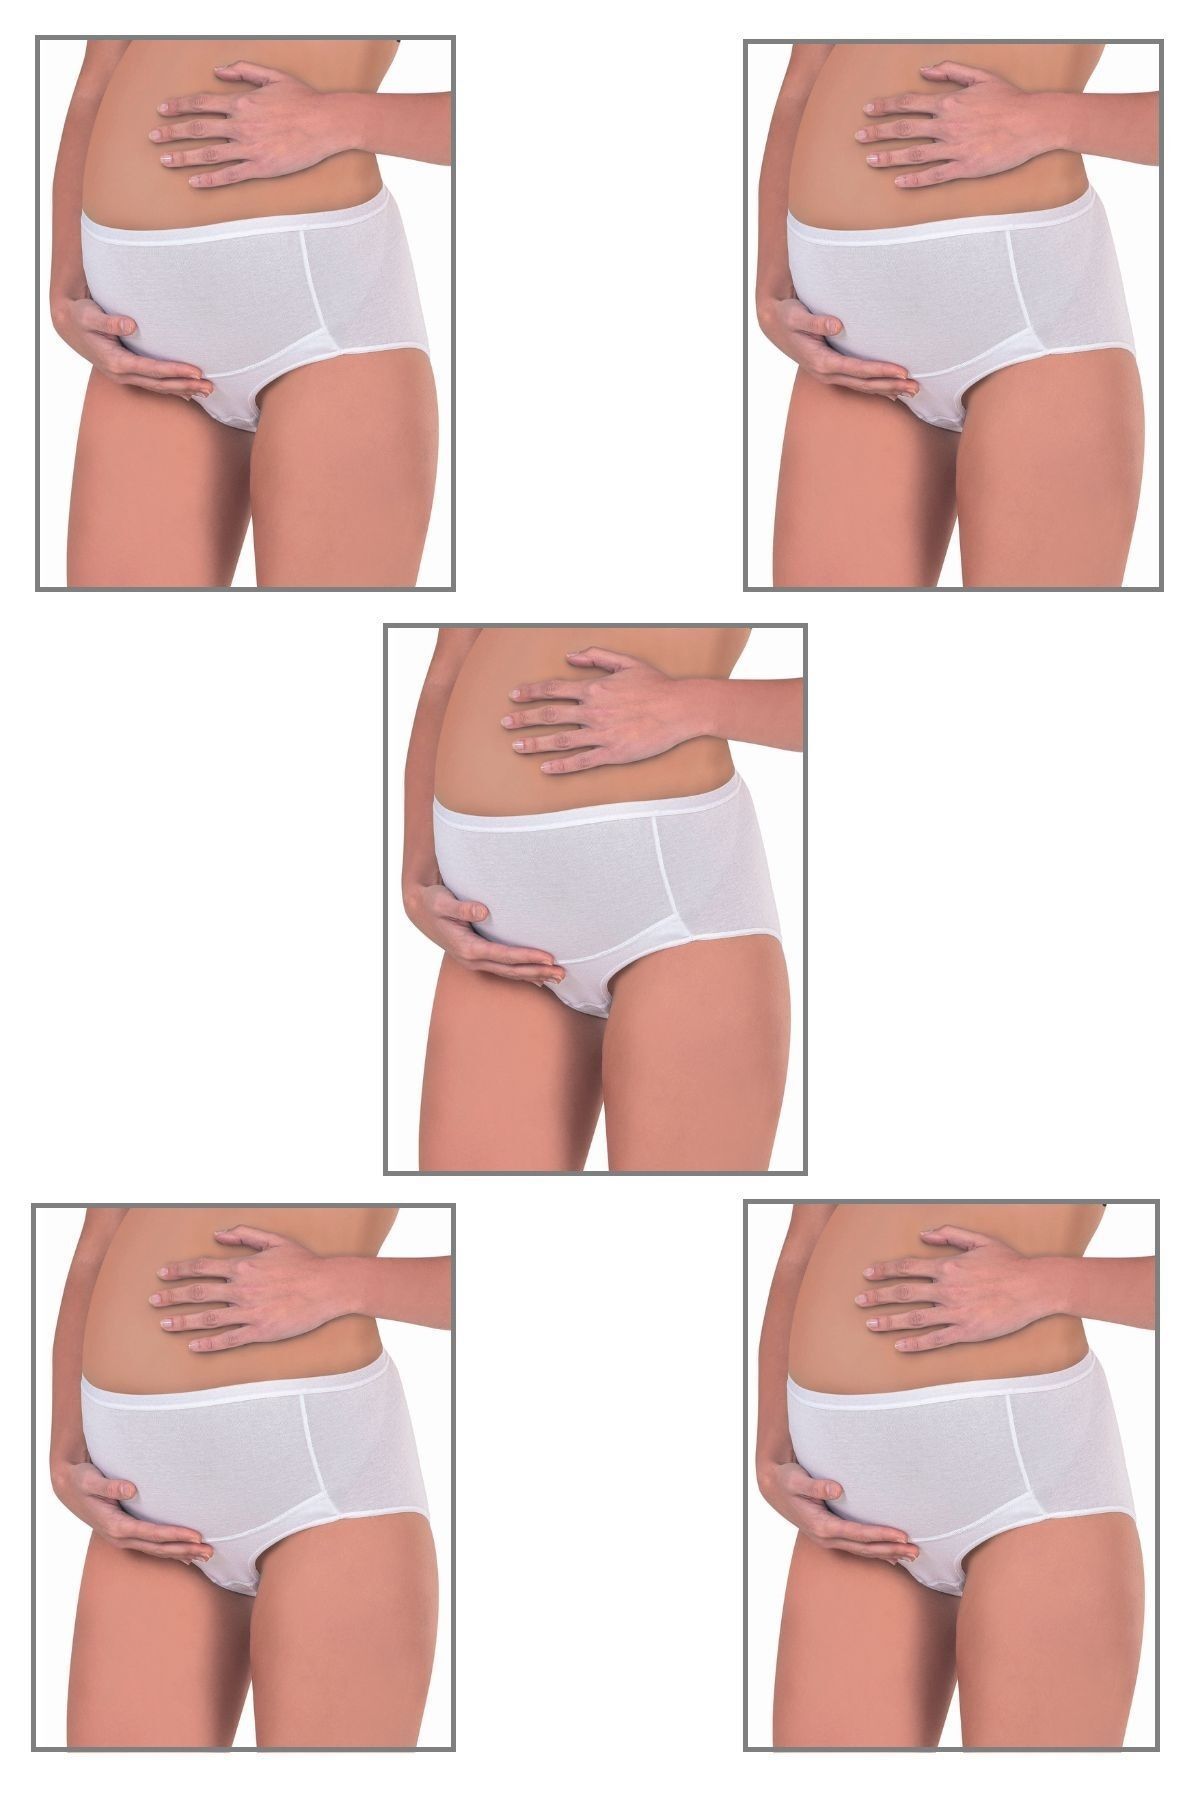 ÖZKAN underwear Özkan 23582 5'li Paket Kadın Pamuklu Likralı Süprem Hamile Lohusa Yüksek Bel Bato Külot